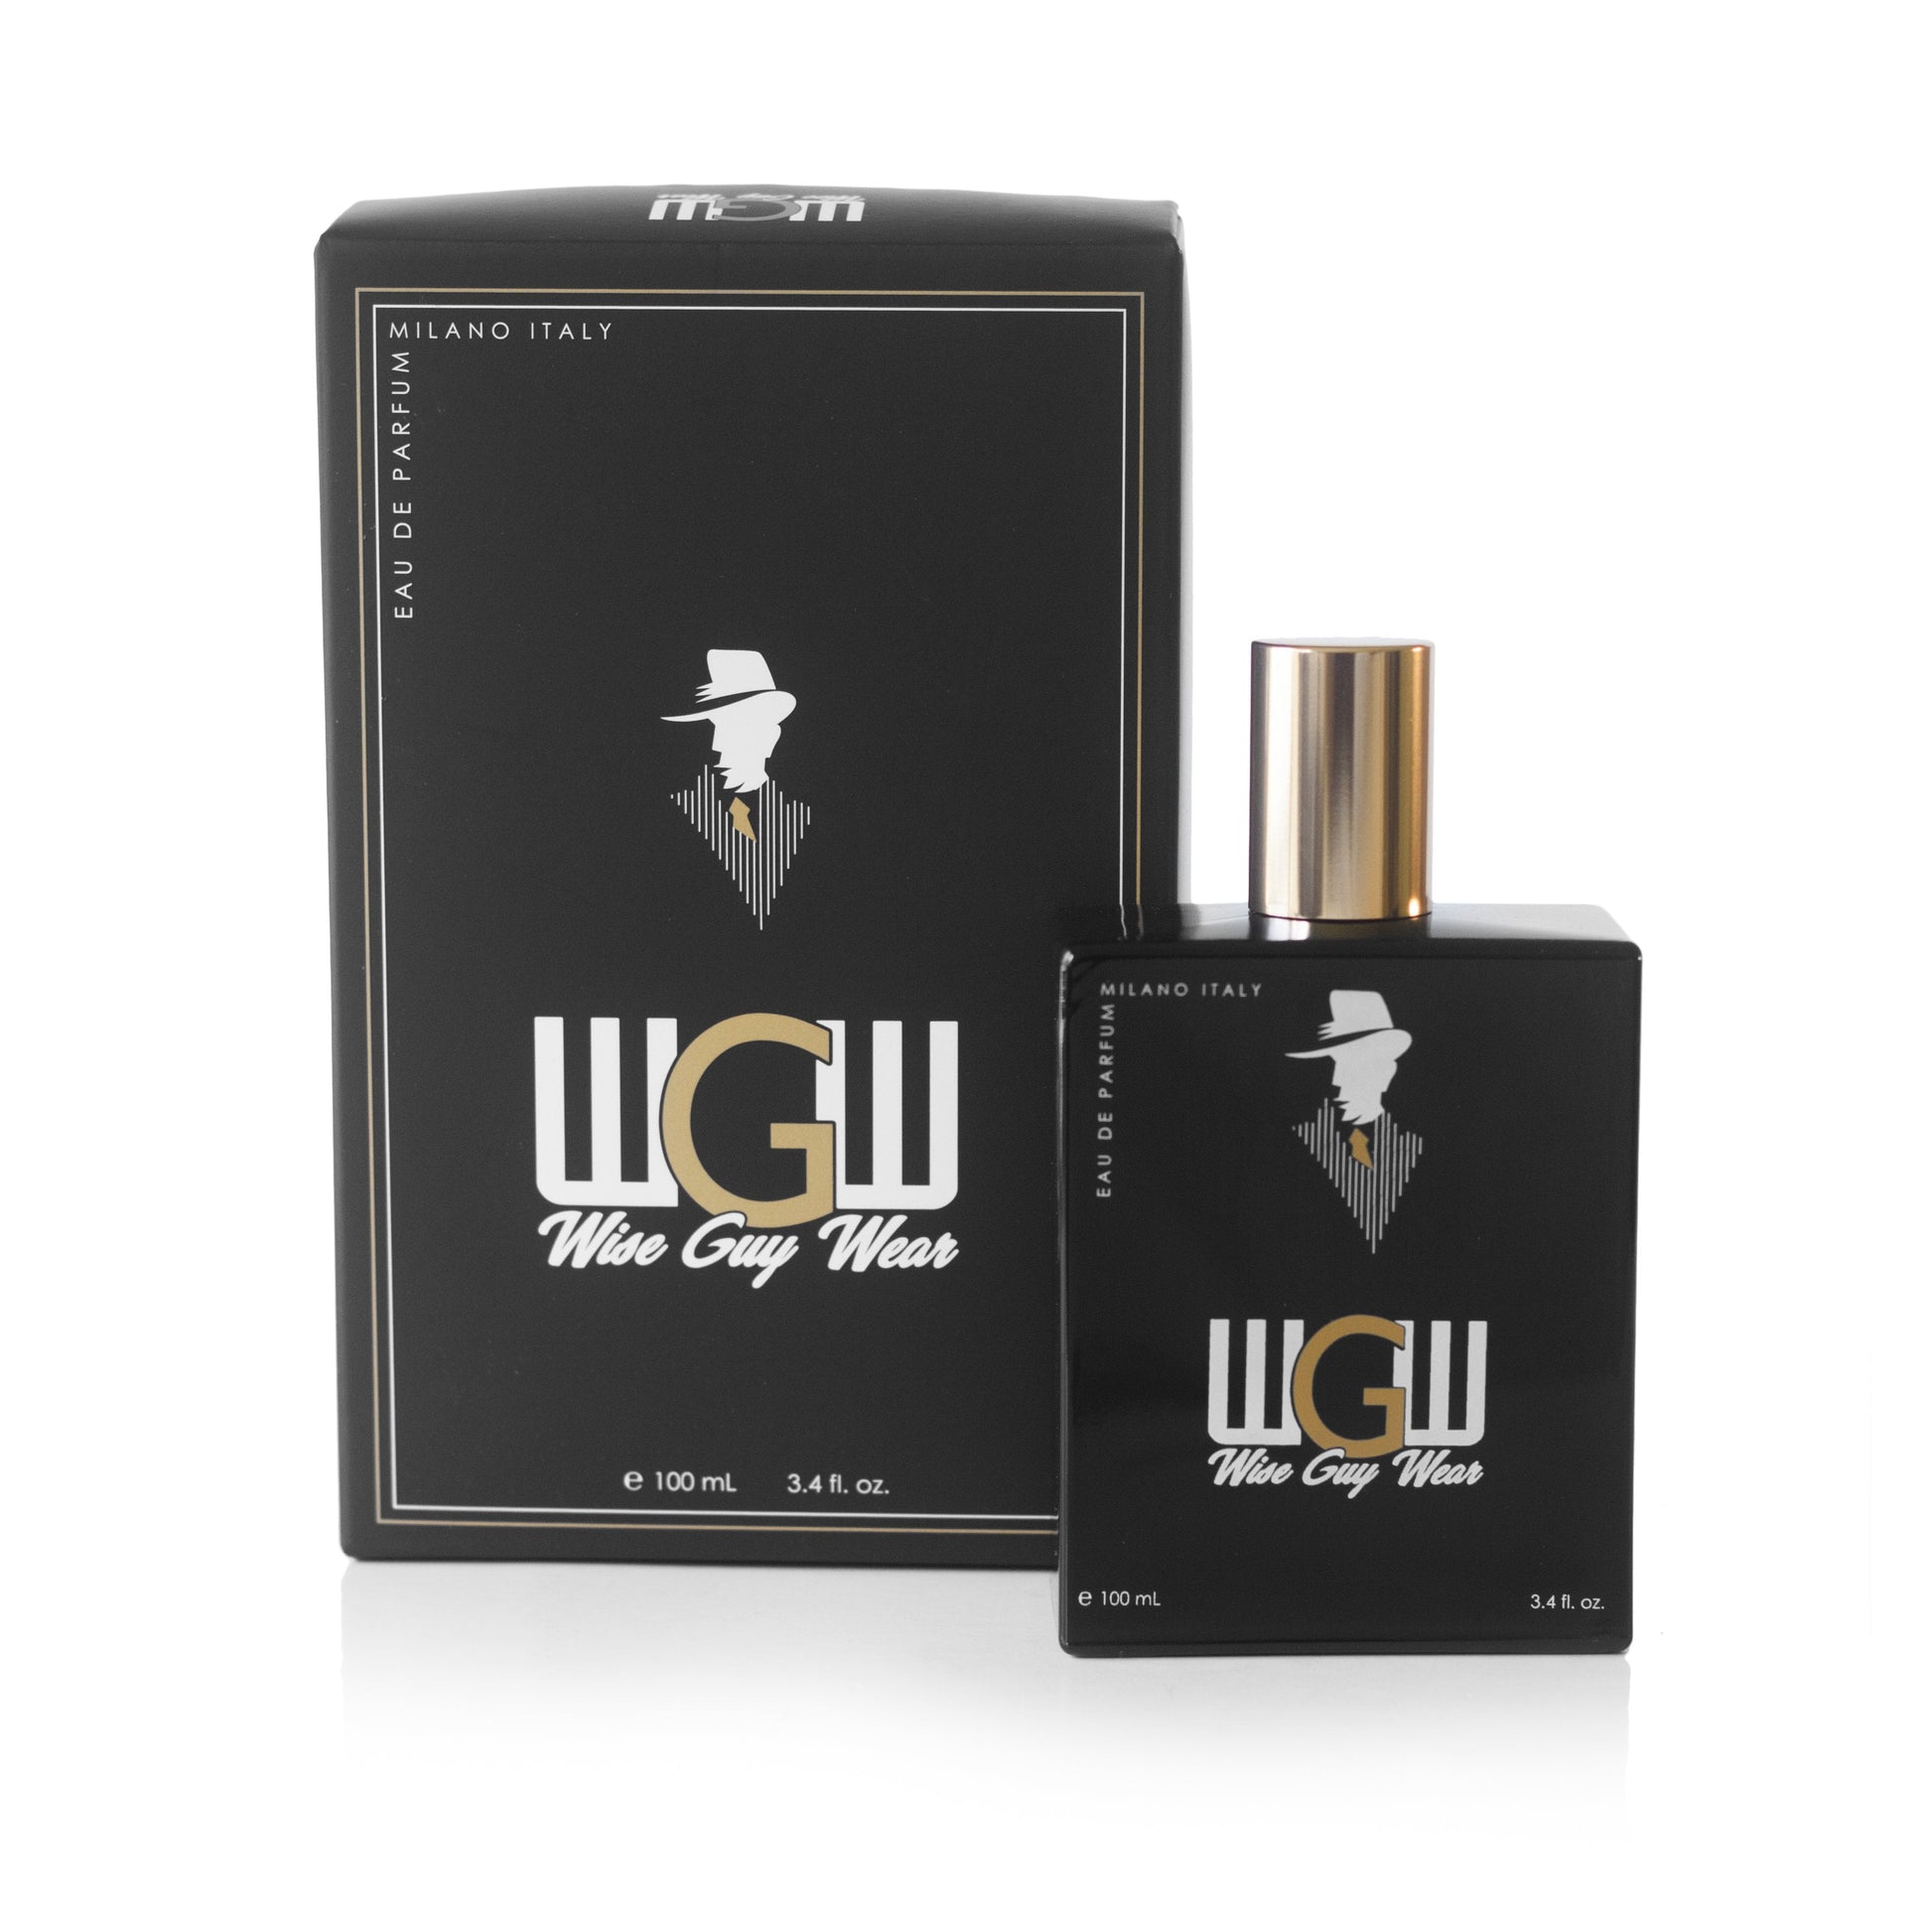 Wise Guy Wear Eau de Parfum Spray for Men, Product image 1